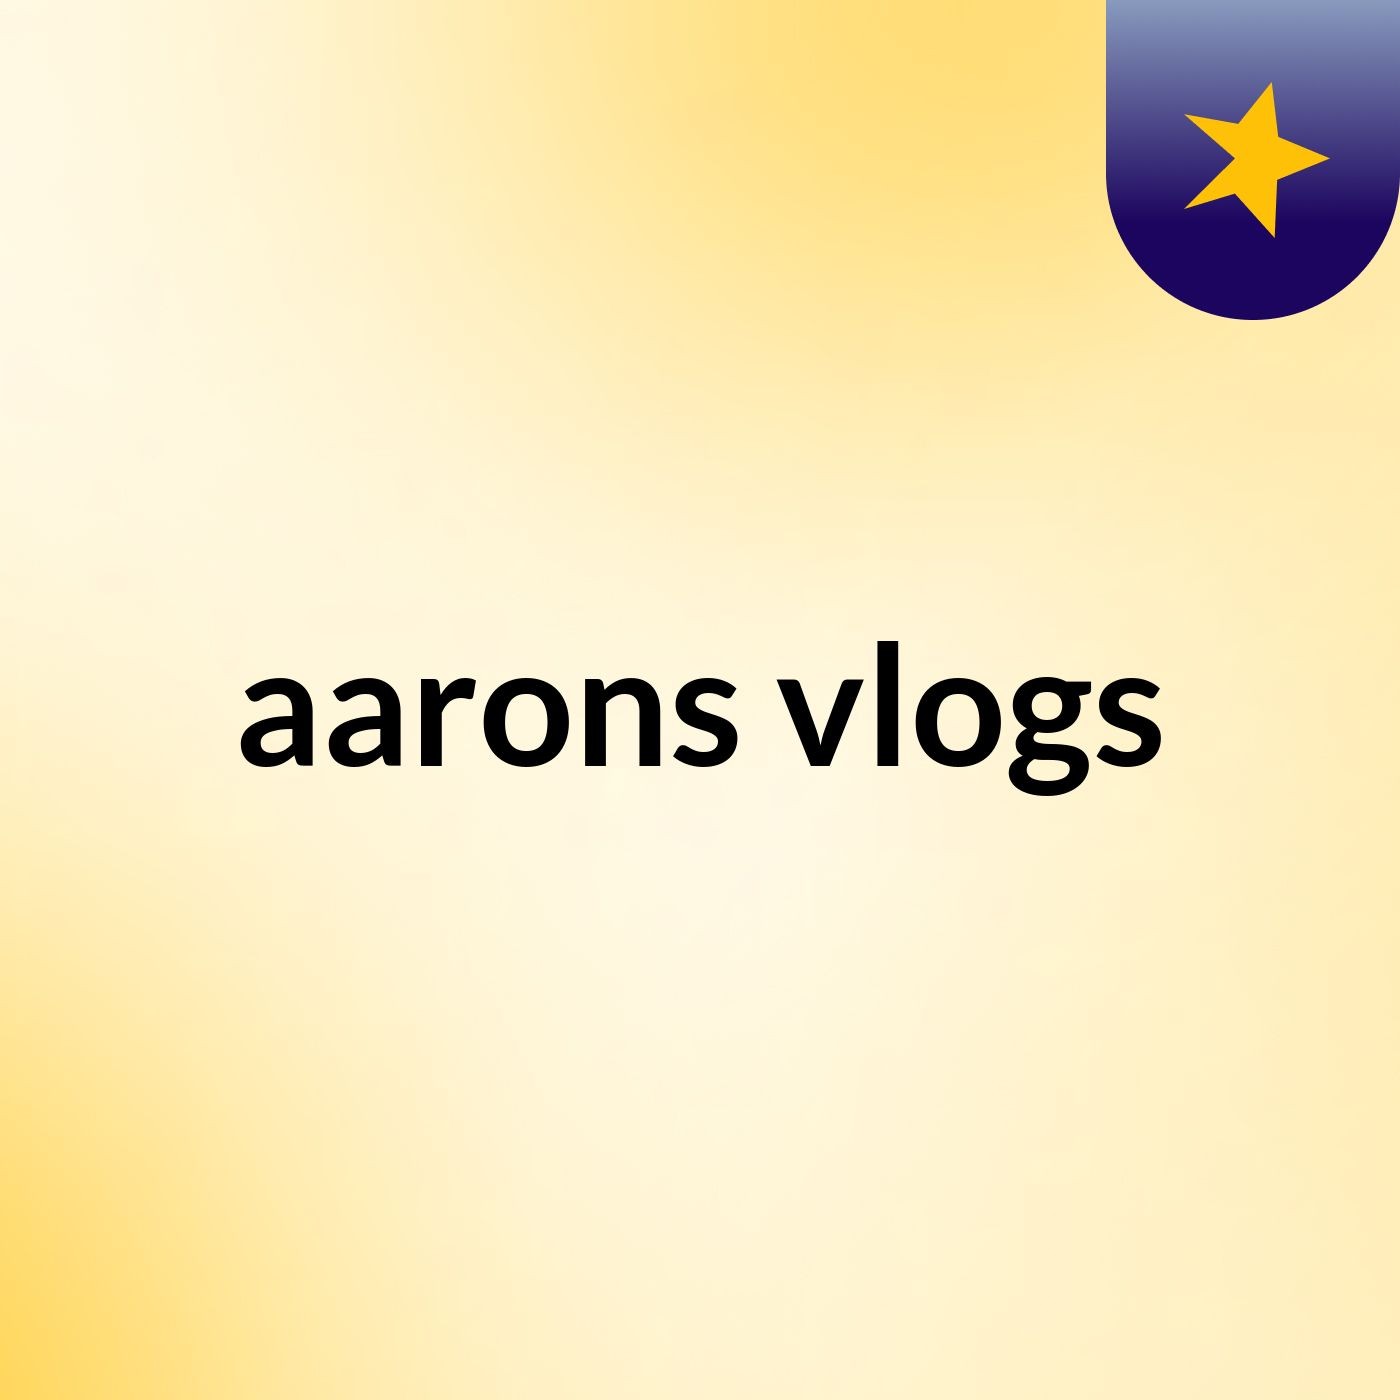 Episode 7 - aarons vlogs